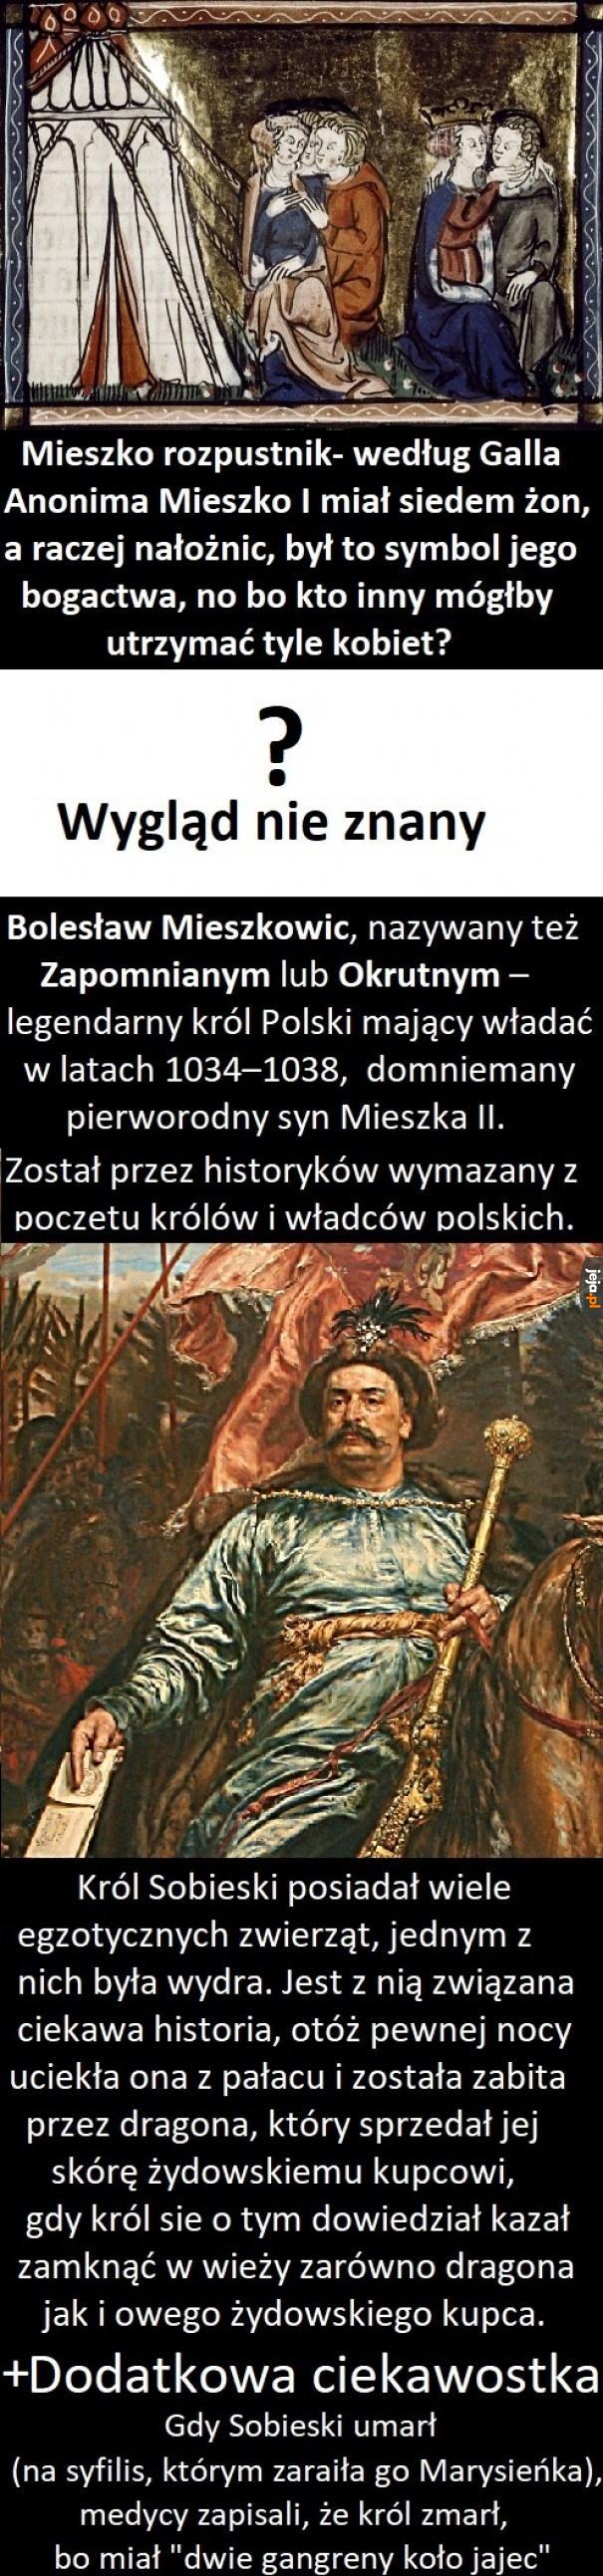 Ciekawostki o władcach i królach Polskich